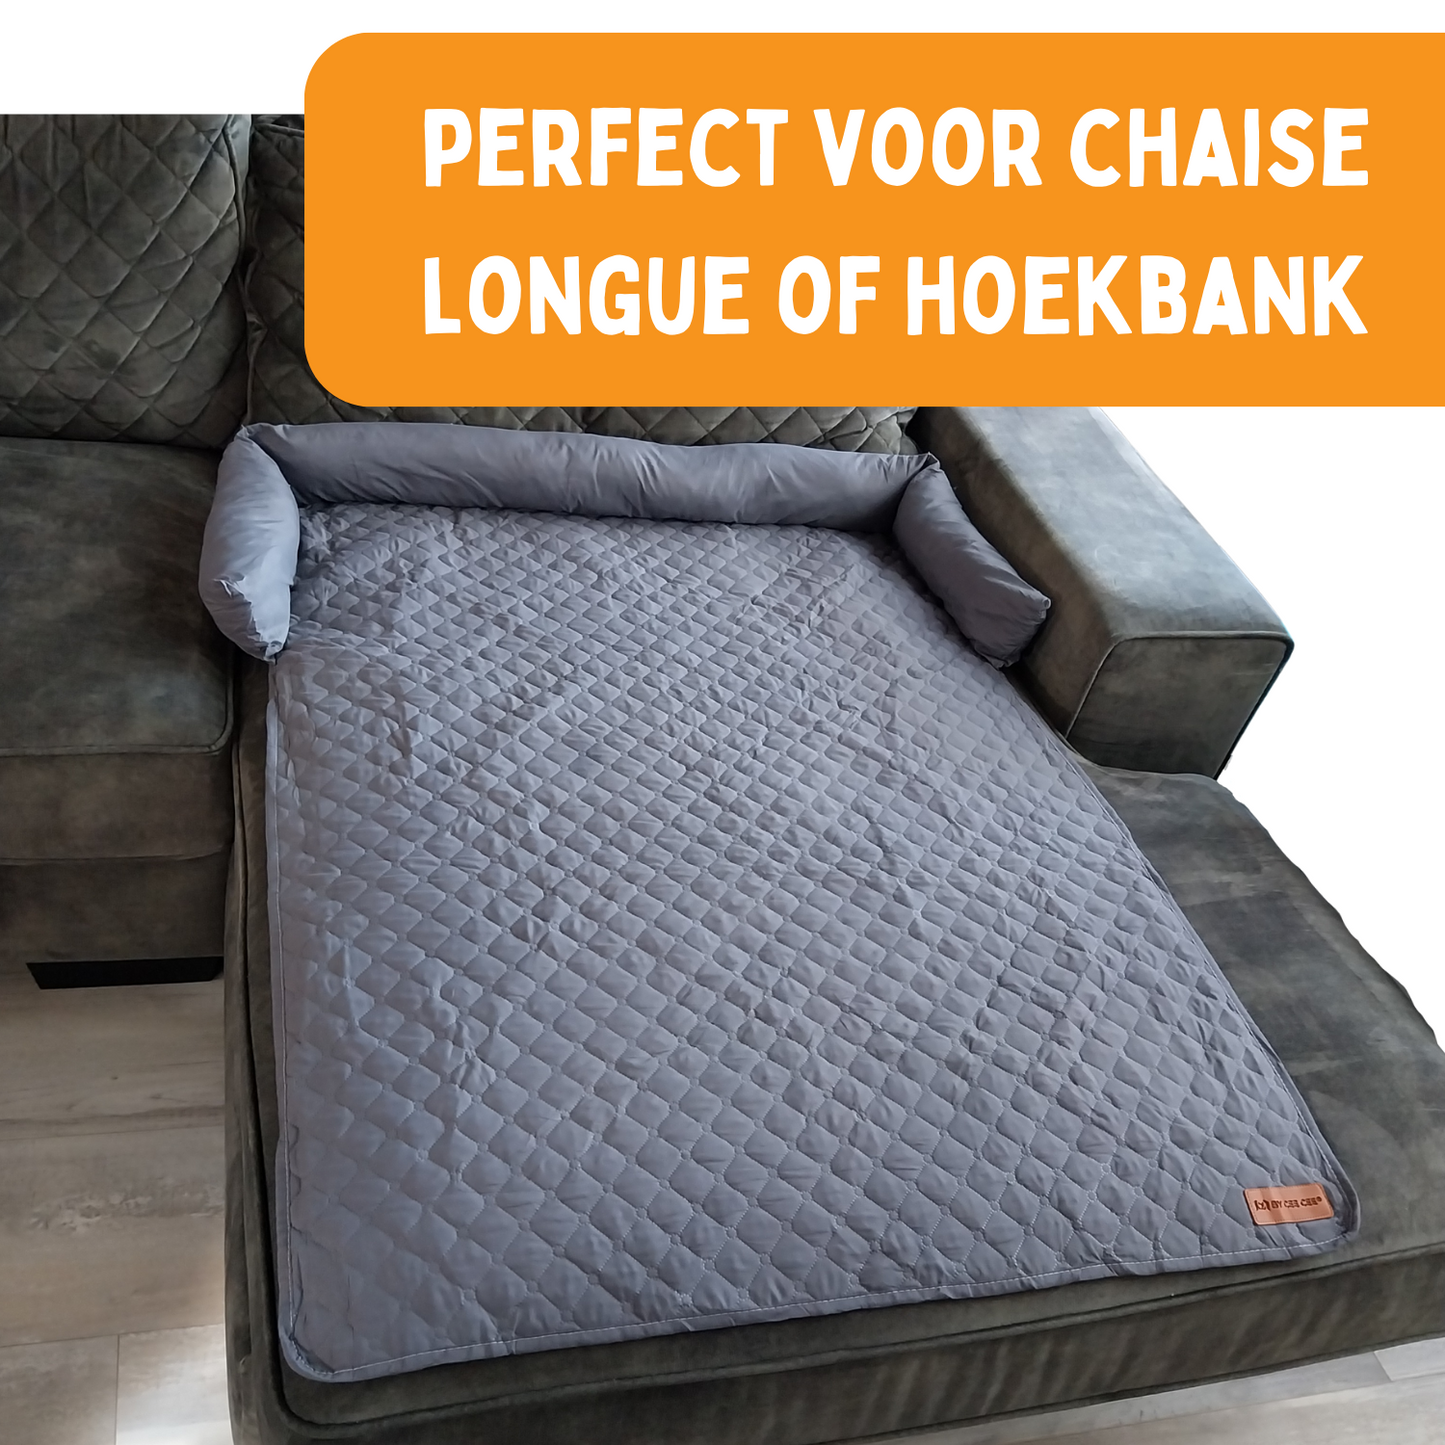 By Cee Cee - Origineel Hondendeken Bank – Hondenkleed Bank - Waterproof - Coole Zomer Editie - Hondenmand - Premium – Donkergrijs - Maat XL